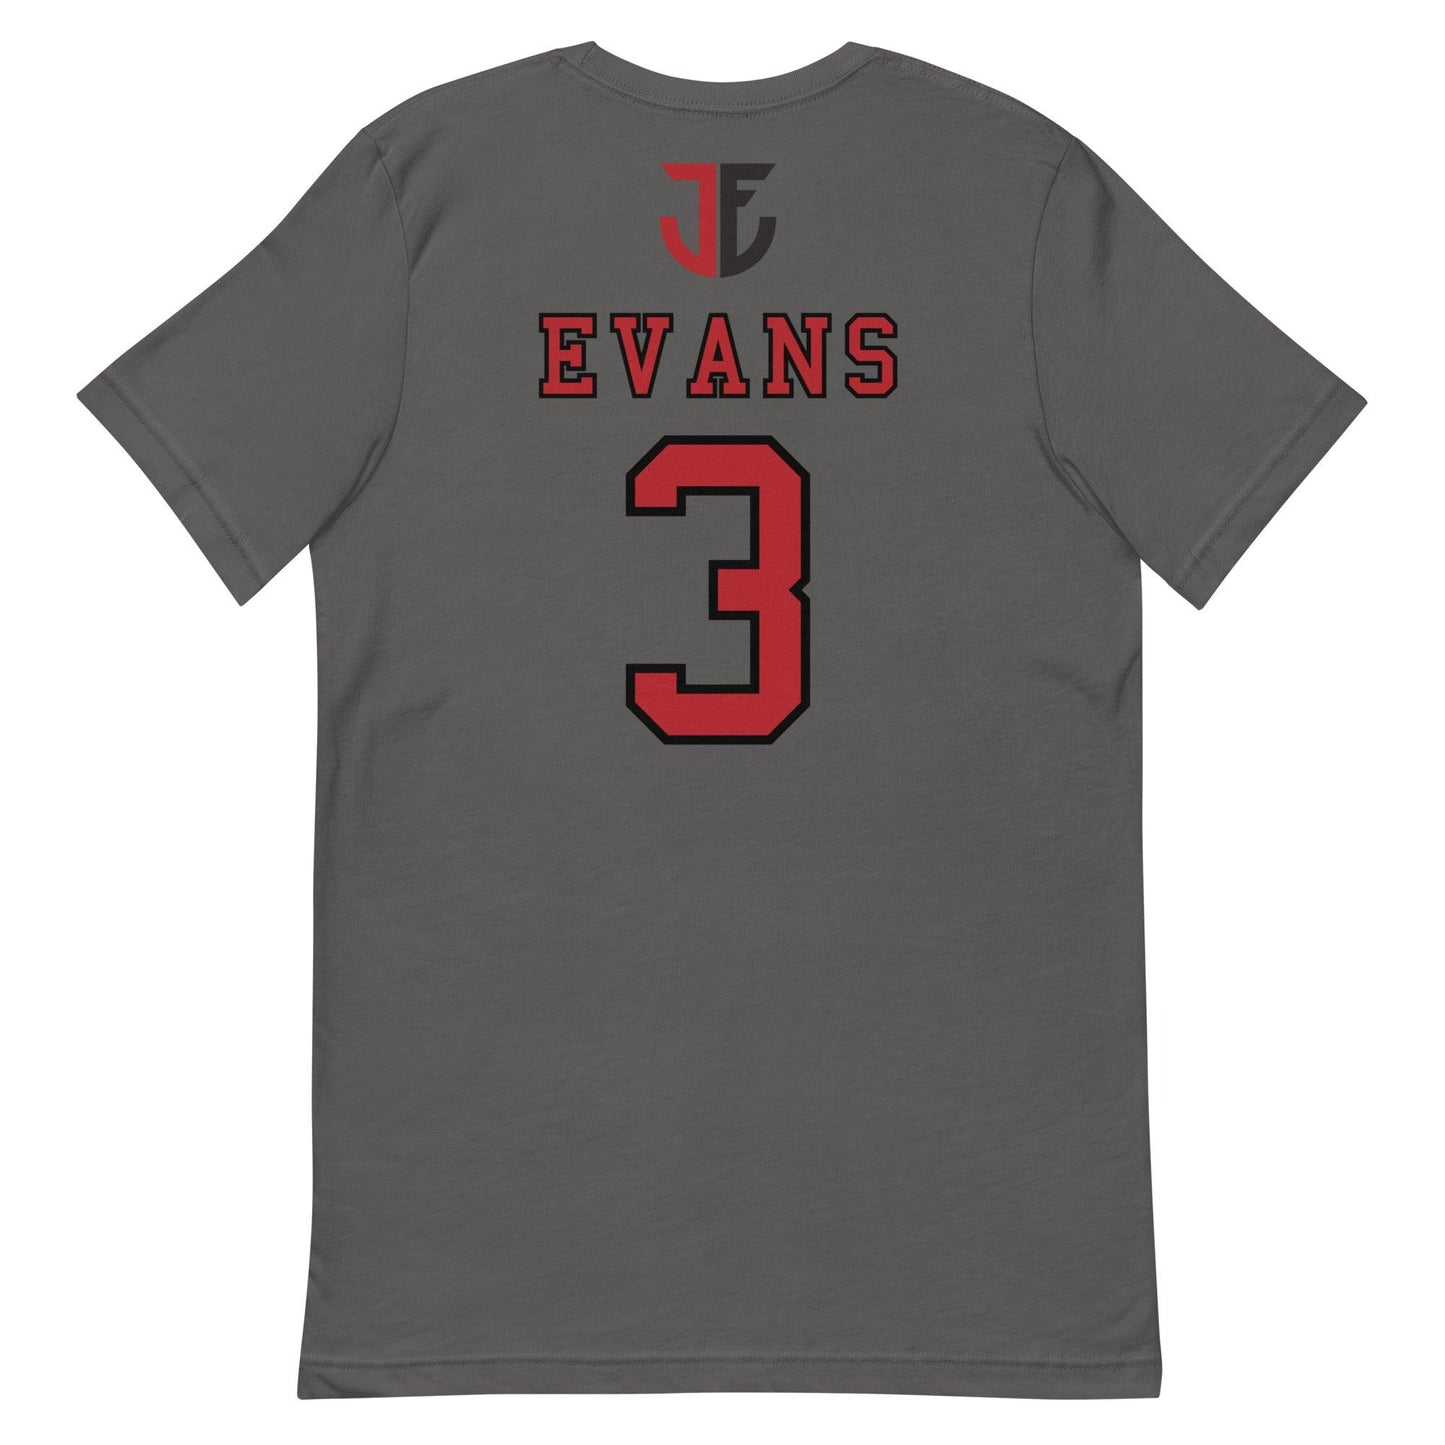 Jaques Evans "Jersey" t-shirt - Fan Arch